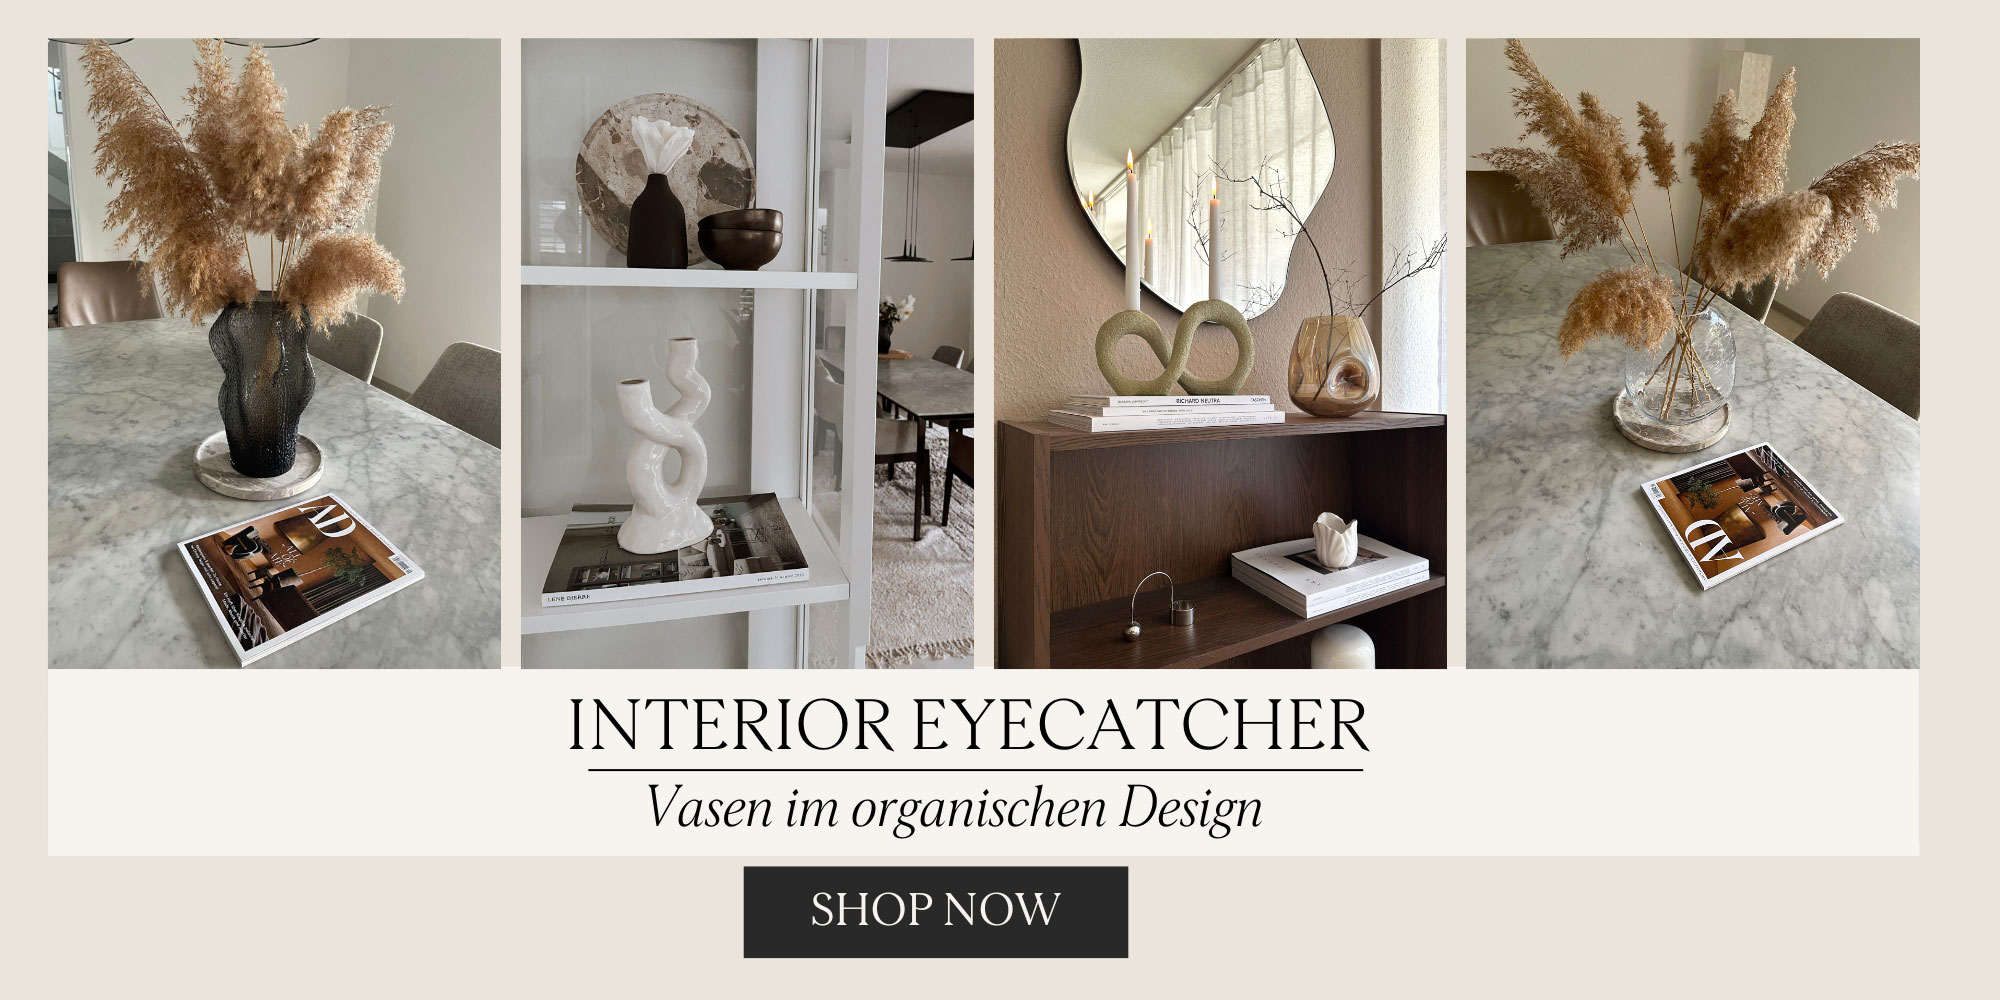 Interior Eyecatcher Vasen in organischem Design - organic shape